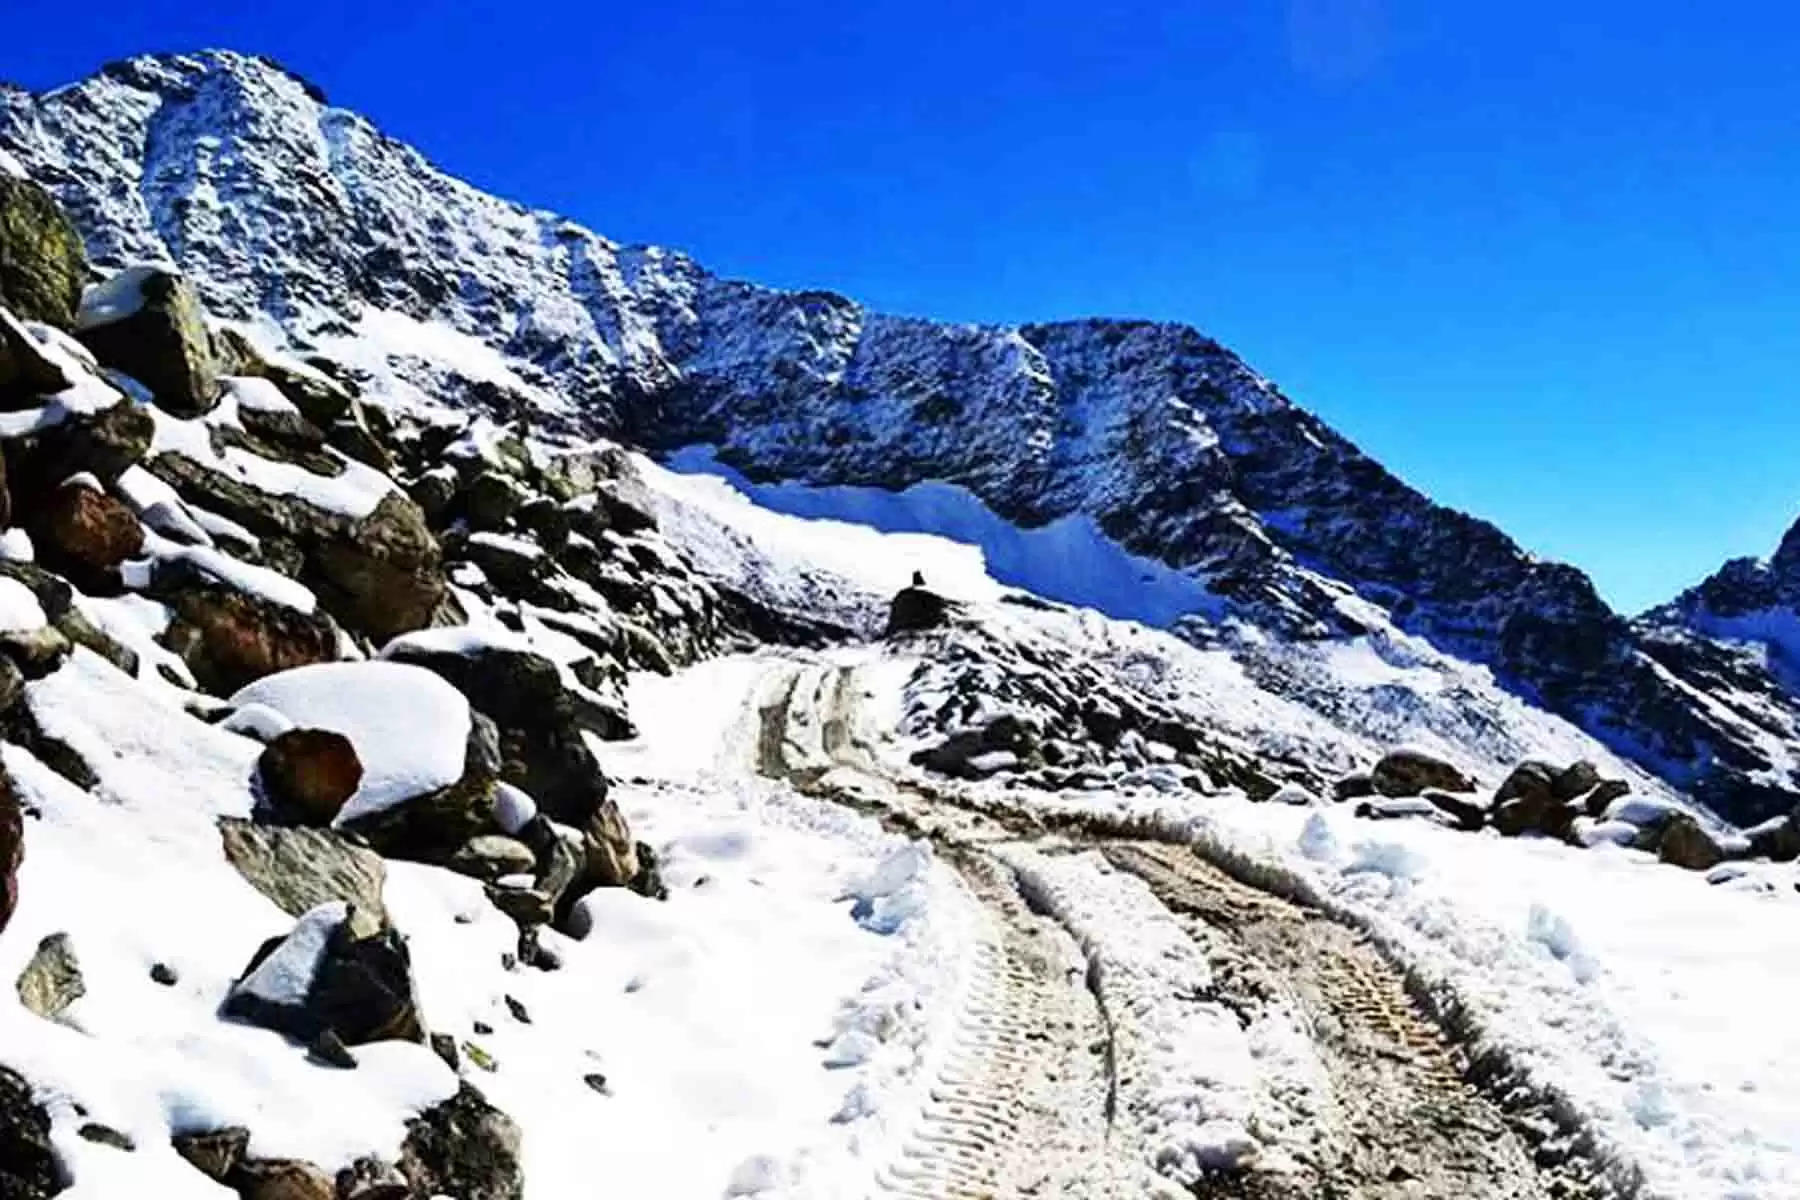 अक्तूबर माह में बर्फबारी होने के कारण जनजातीय क्षेत्र पांगी घाटी को जिला मुख्यालय चम्बा से जोड़ने वाला वाला चम्बा किलाड बाया साच पास मार्ग बंद हो गया था।